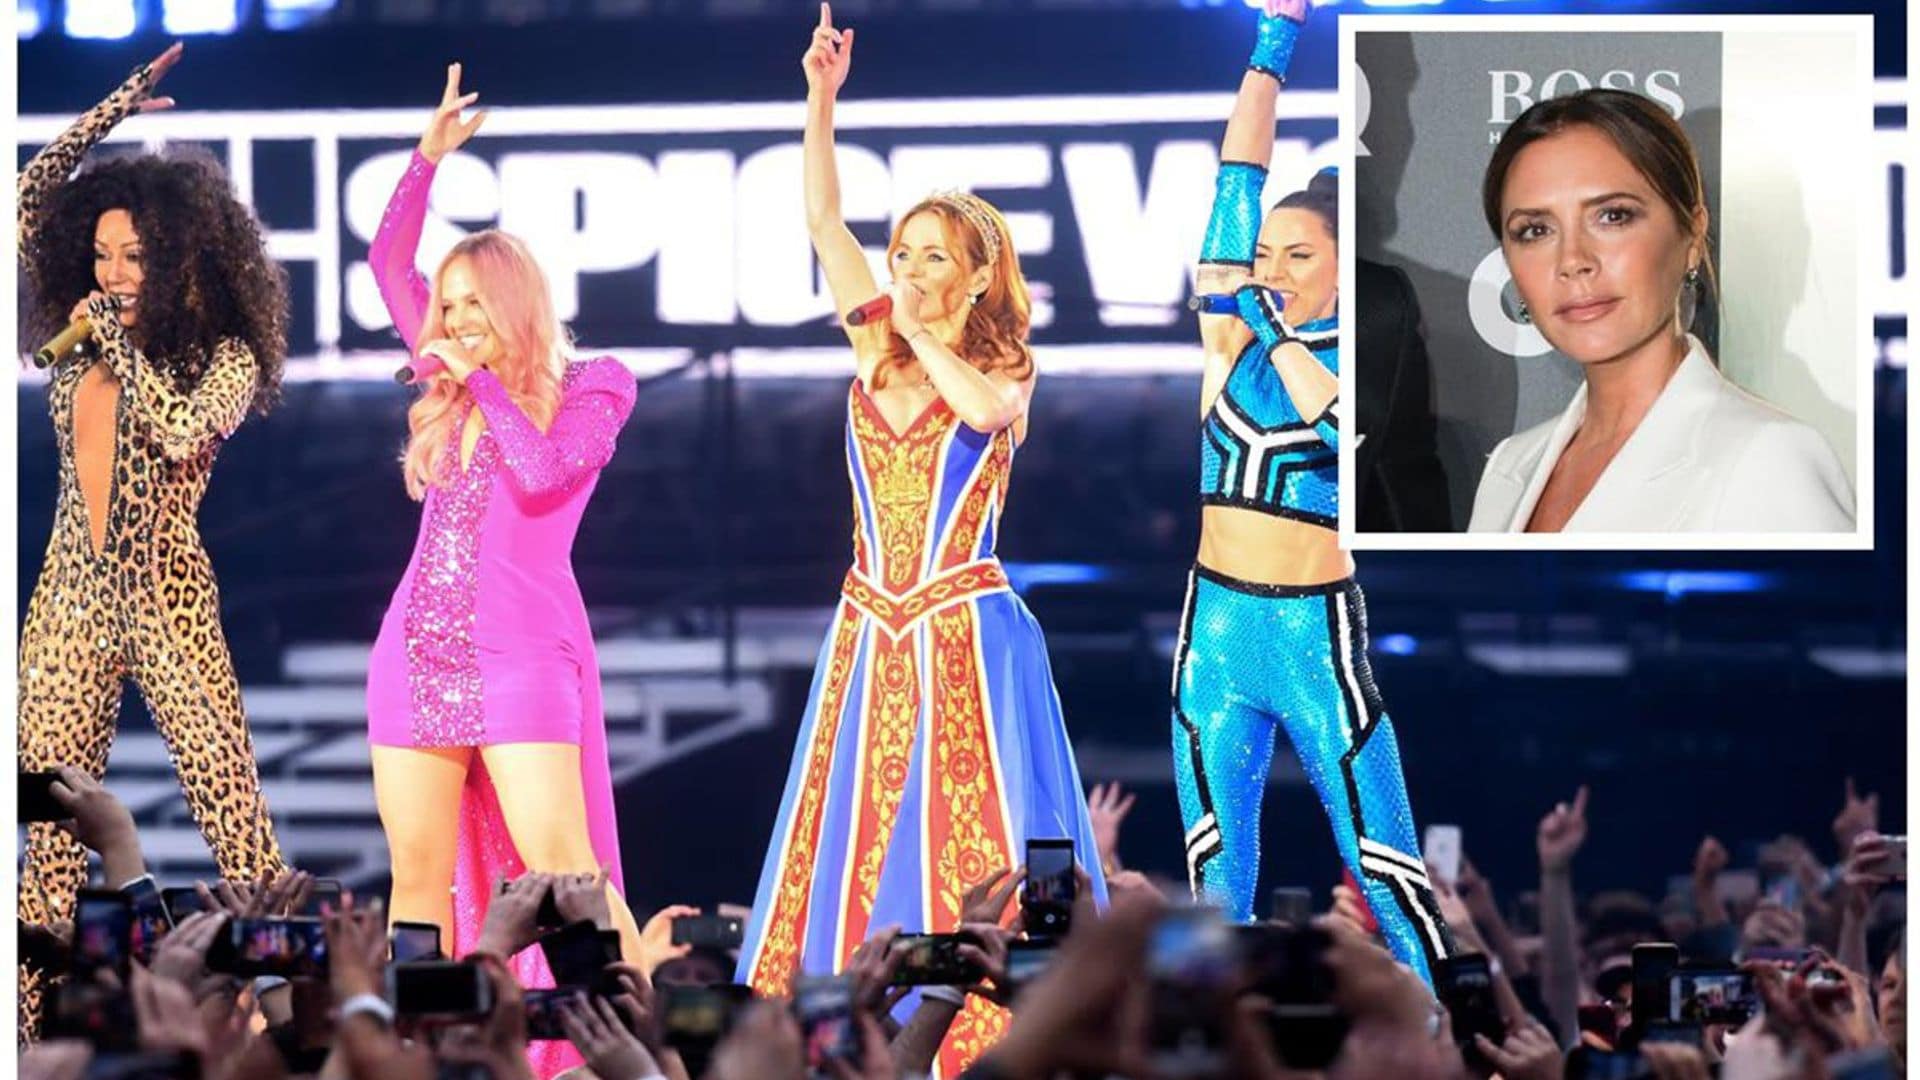 Is Victoria Beckham teasing a ‘Spice Girls’ reunion?